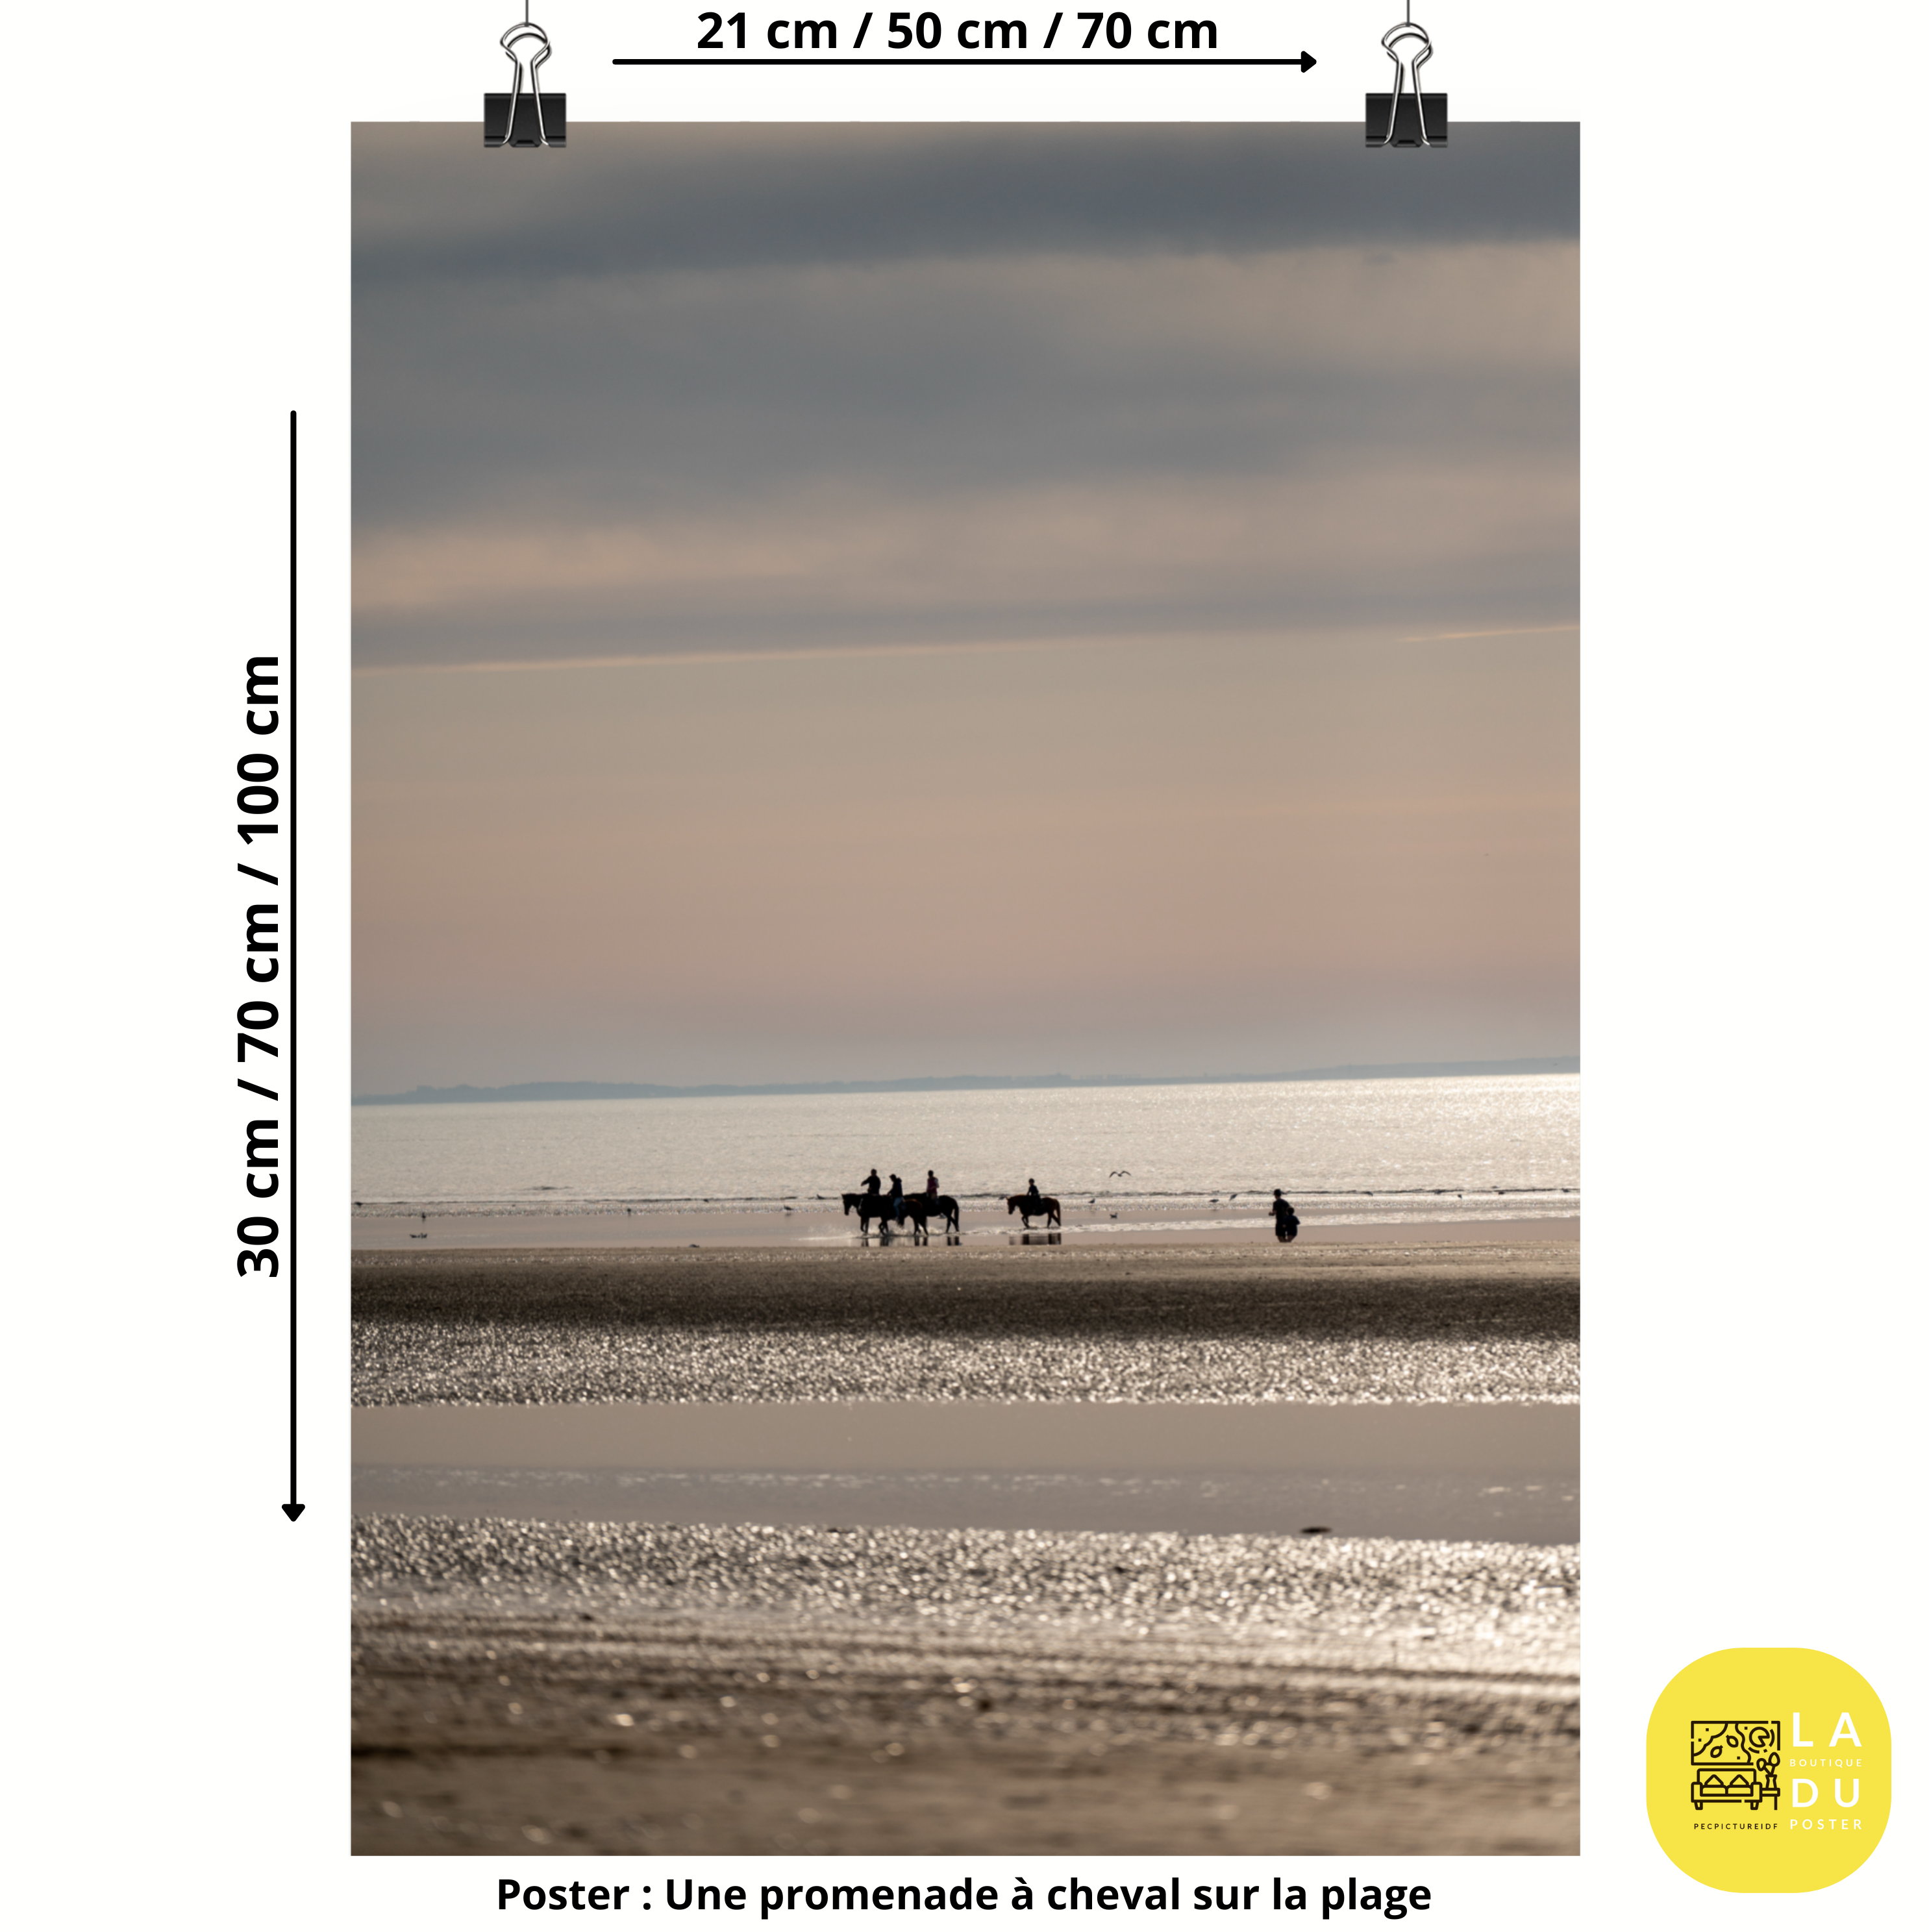 Poster mural - Une promenade à cheval sur la plage – Photographie de Deauville plage – Poster photo, poster XXL, photographie murale et des posters muraux unique au monde. La boutique de posters créée par Yann Peccard un Photographe français.